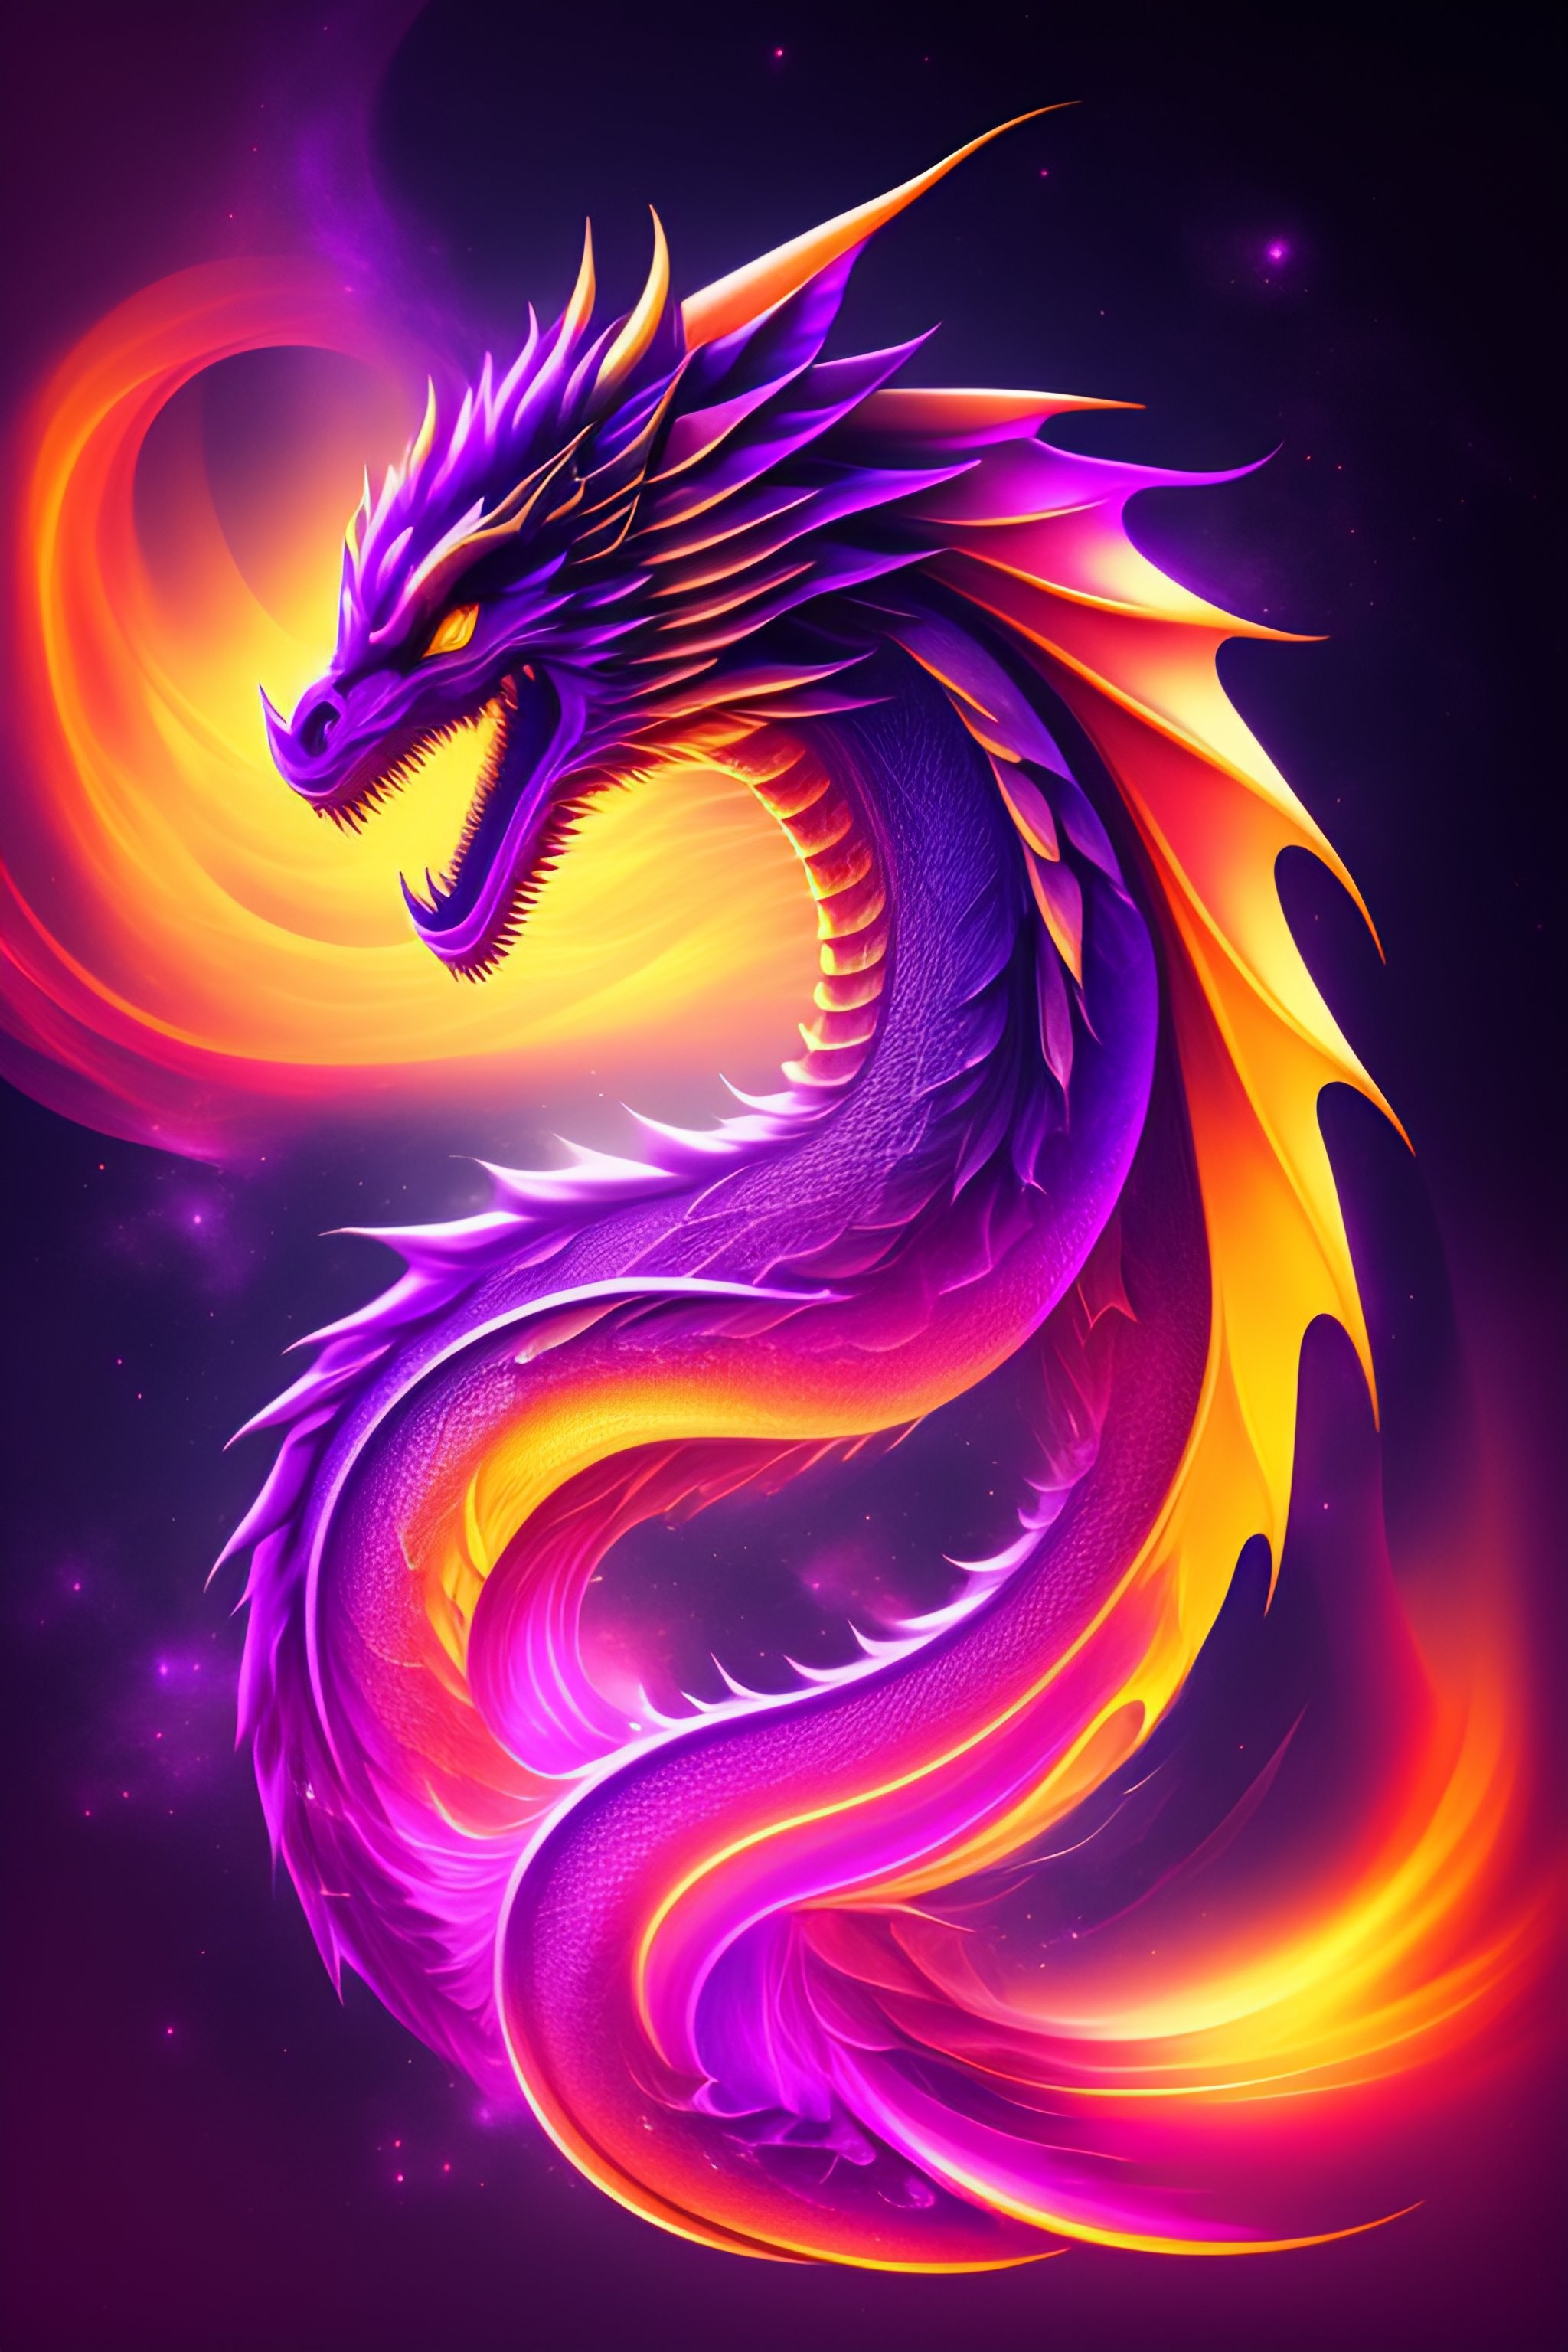 Rồng hỏa tinh đơn giản màu tím trên nền đen (Minimal purple fire galaxy dragon logo on black background): Hình ảnh này có gì đặc biệt? Đó chính là sự kết hợp hoàn hảo giữa màu tím huyền bí và logo rồng đầy uy nghi trong không gian đen tối. Khám phá ngay hình ảnh để cảm nhận sự mạnh mẽ và đầy sức hút của loài rồng hỏa tinh.